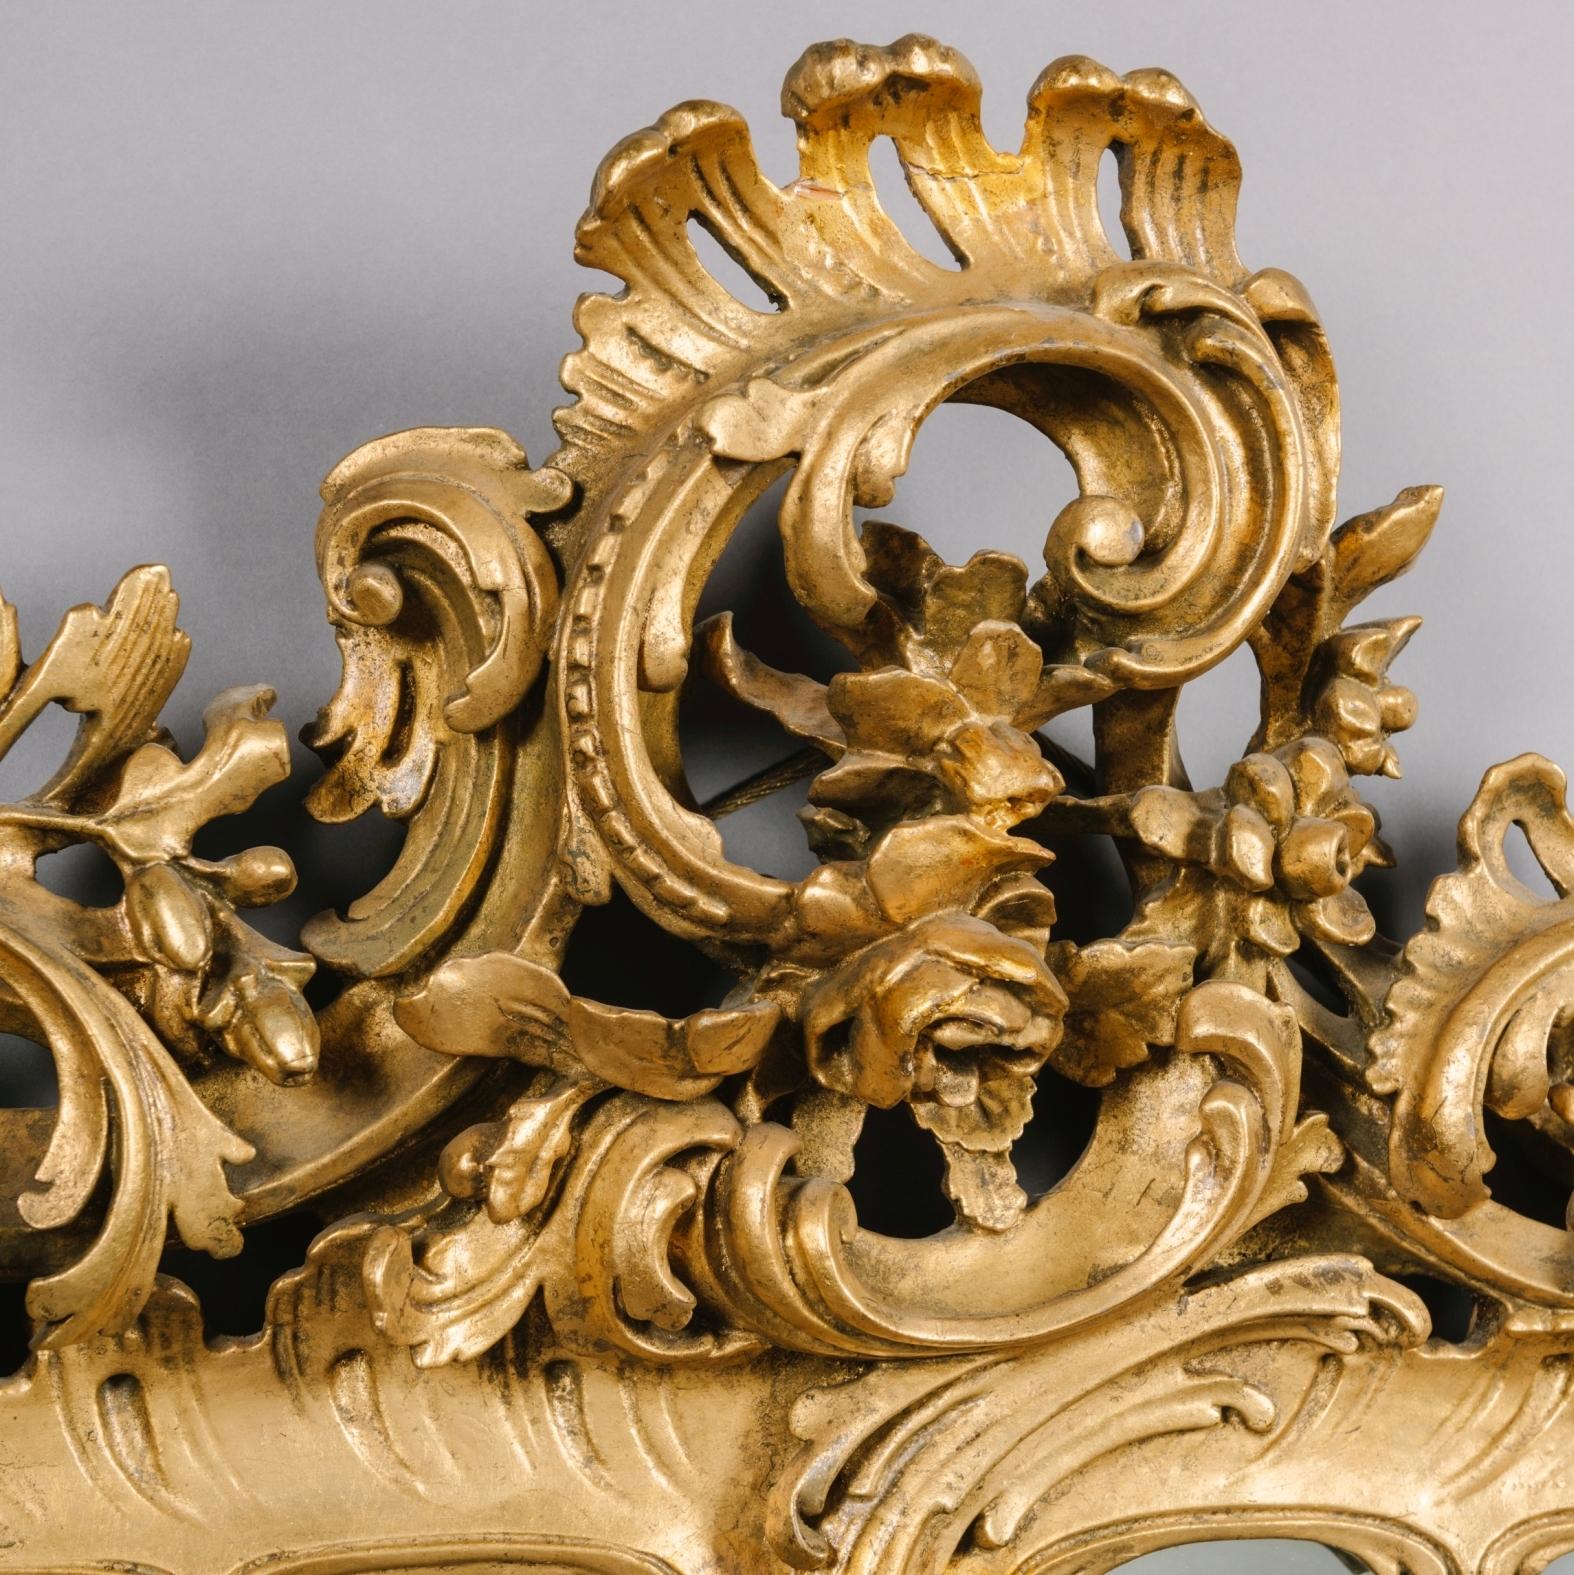 Paire de miroirs en bois doré sculpté de style George III.

Chaque miroir présente une plaque rectangulaire biseautée dans un cadre en bois doré sculpté d'acanthes et de volutes en 